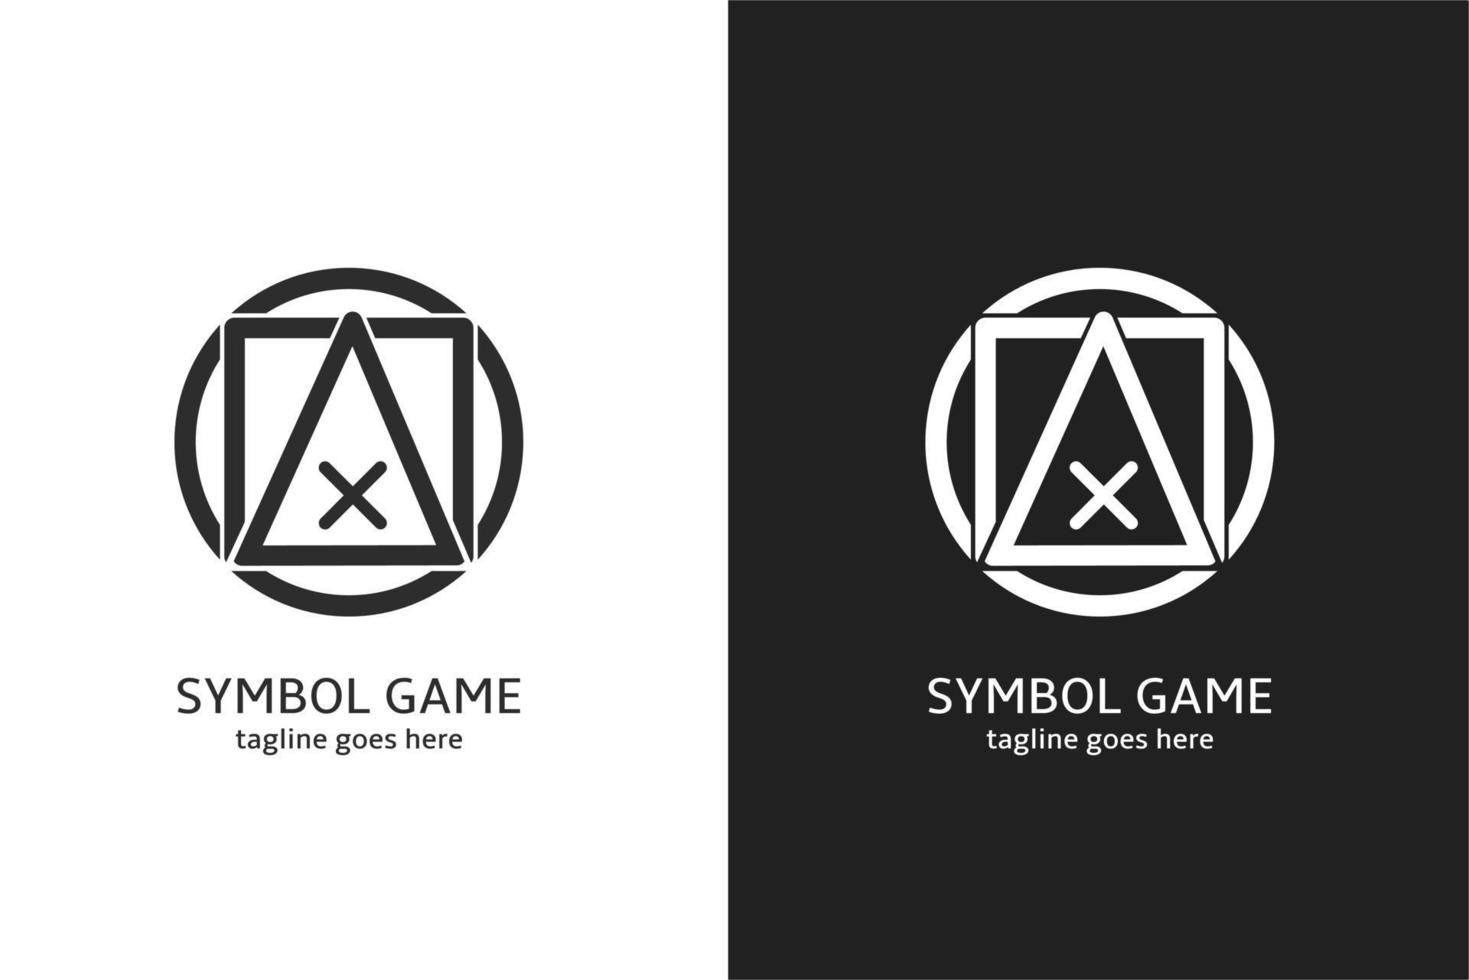 logotipo del juego, diseño de símbolo de botón redondo, cuadrado, triángulo y x, vector gratuito